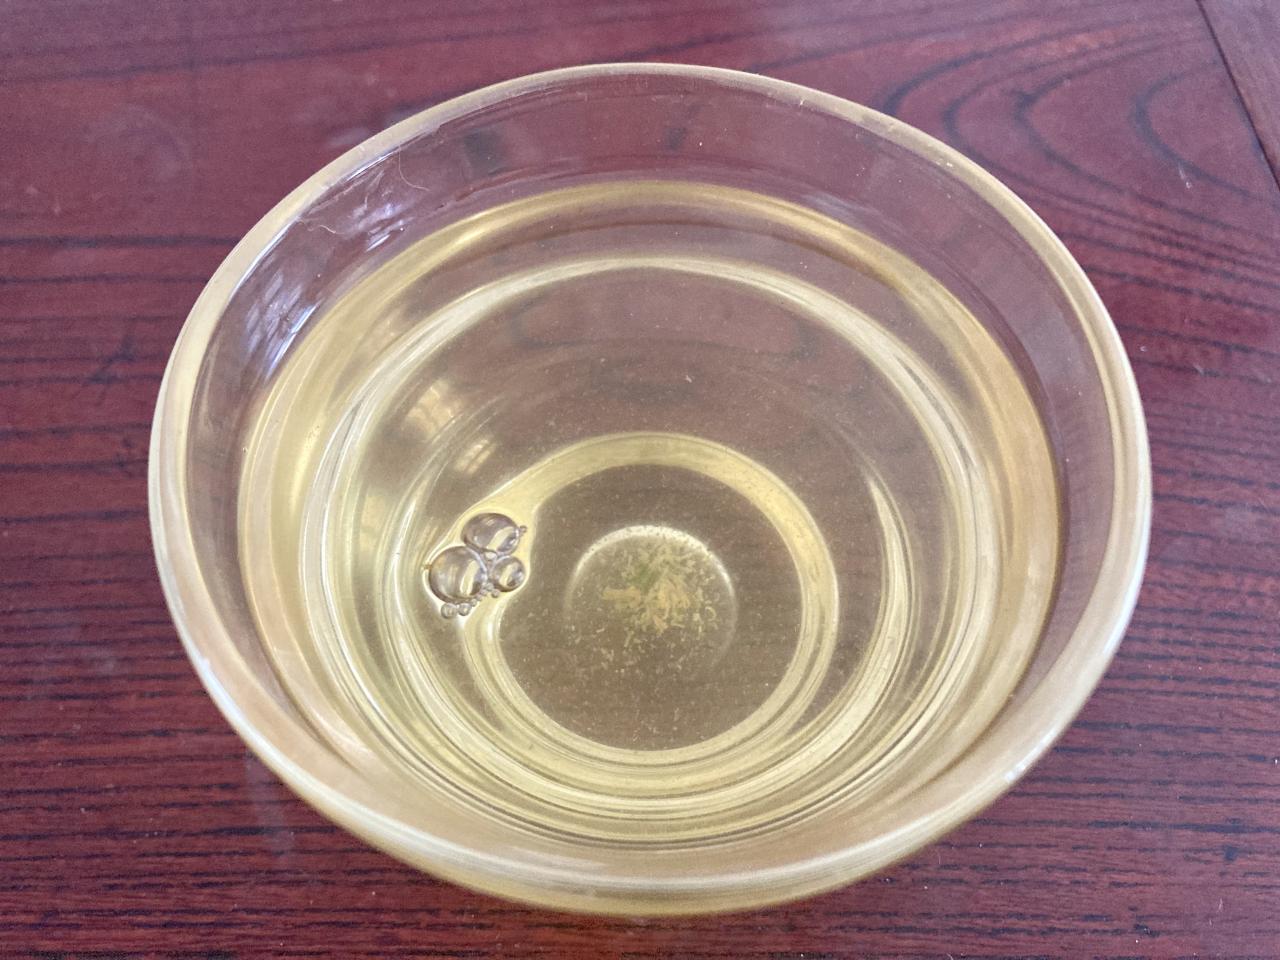 Grüner Tee serviert in einer gläsernen Schale